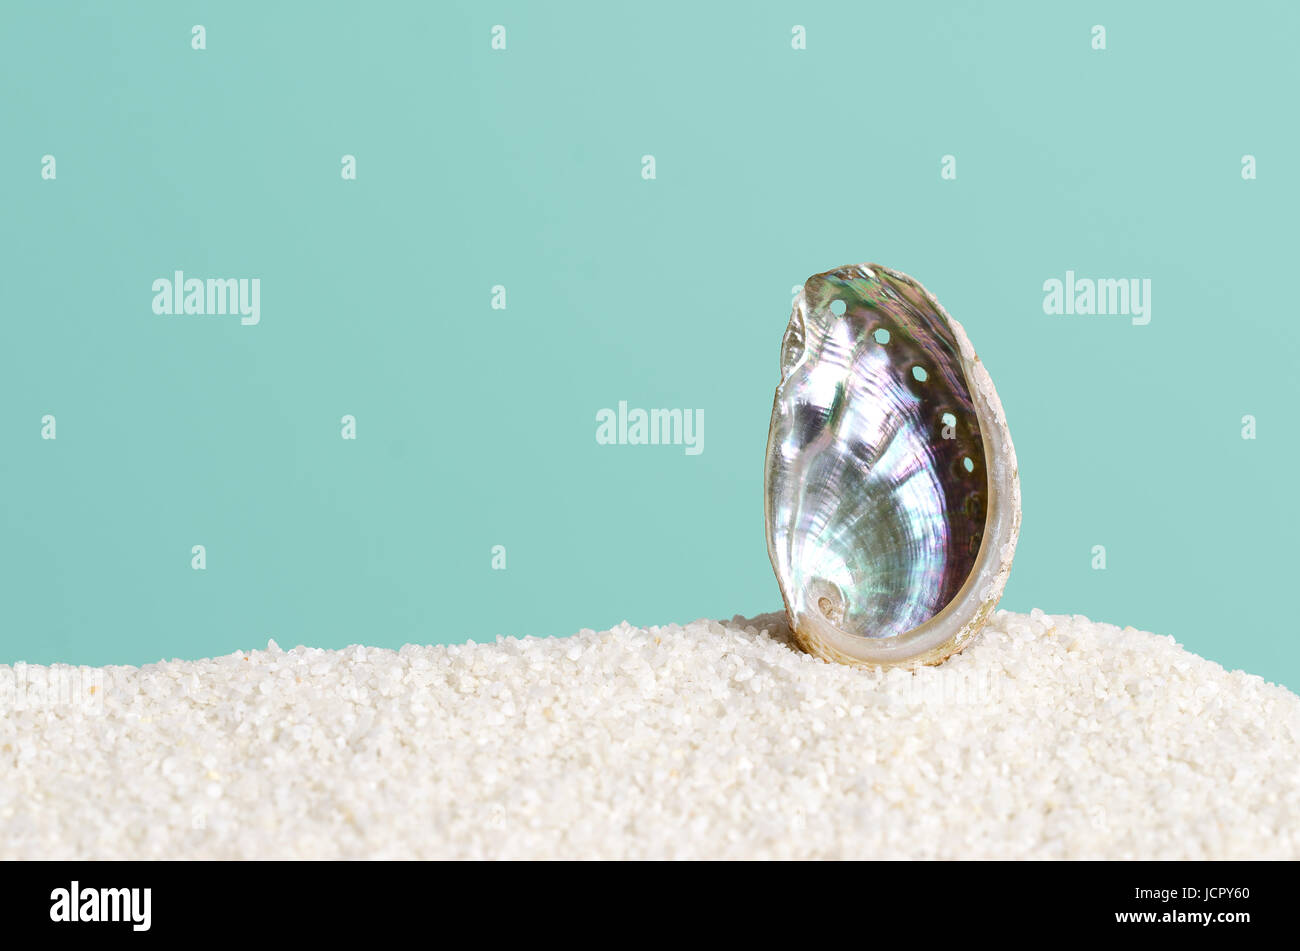 Abalone shell sobre arena blanca sobre fondo azul turquesa. Ormer, Haliotis, el caracol de mar, o molusco gasterópodo marino. Abra estructura espiral. Iridescent. Foto de stock